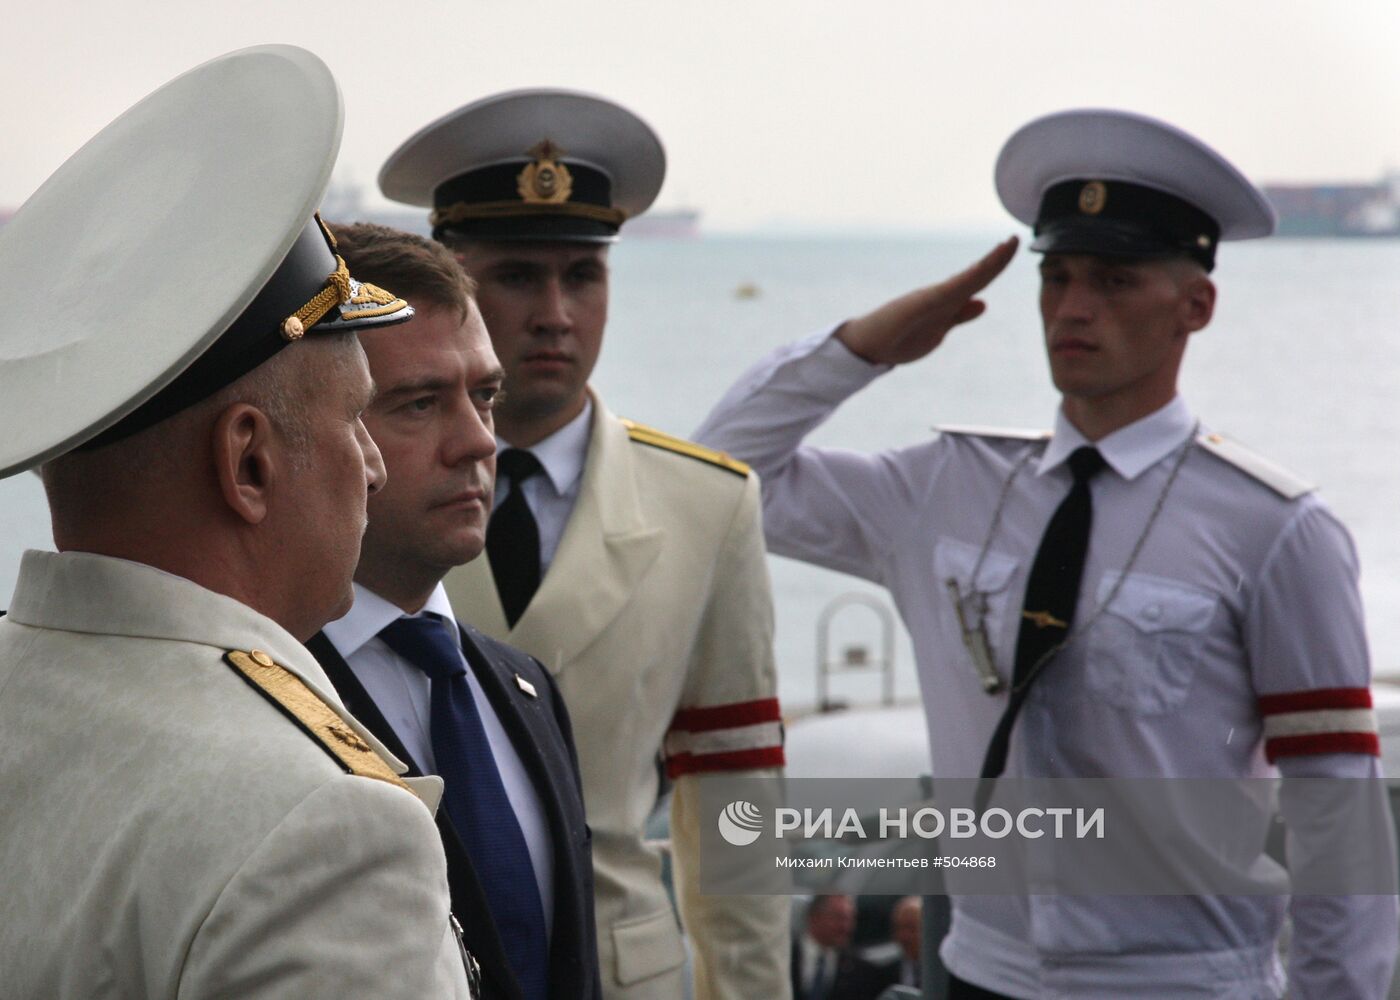 Д.Медведев посетил крейсер "Варяг", совершающий визит в Сингапур